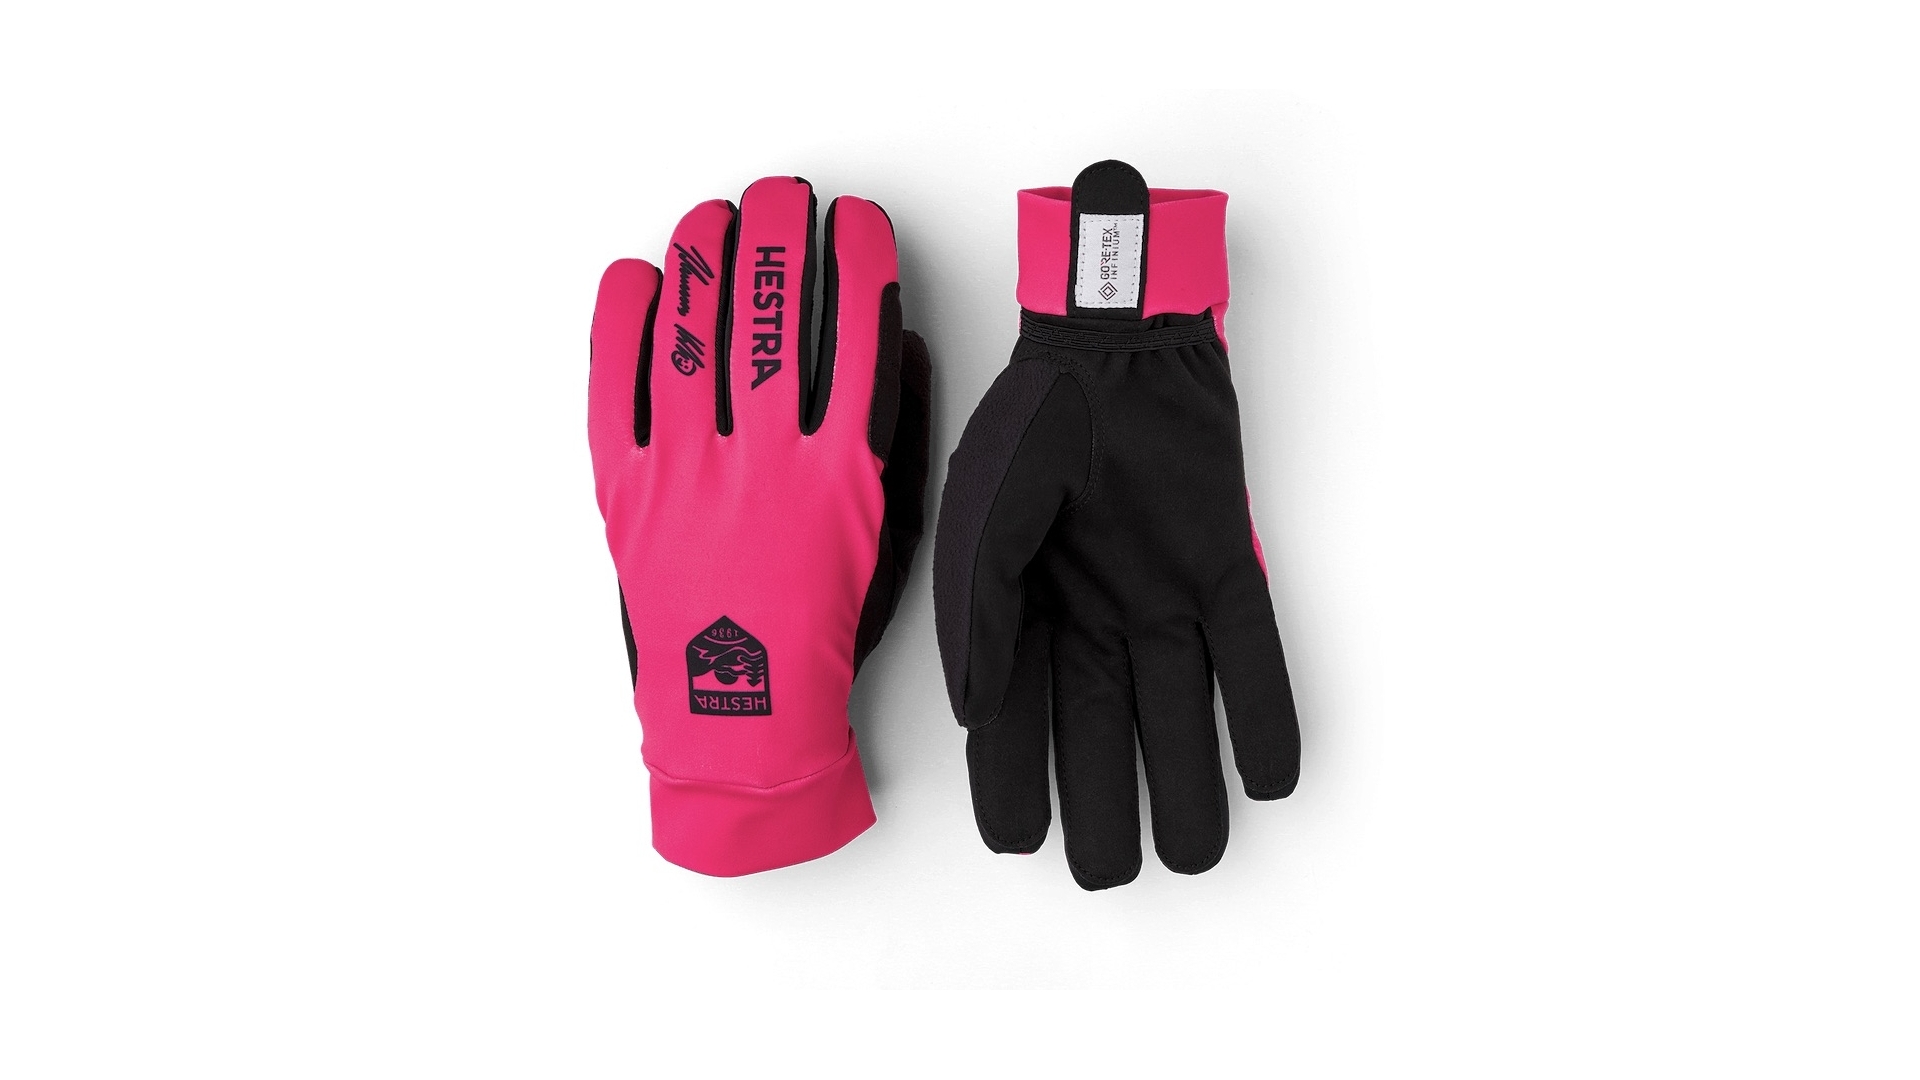 Hestra Klaebo Pro Model gloves